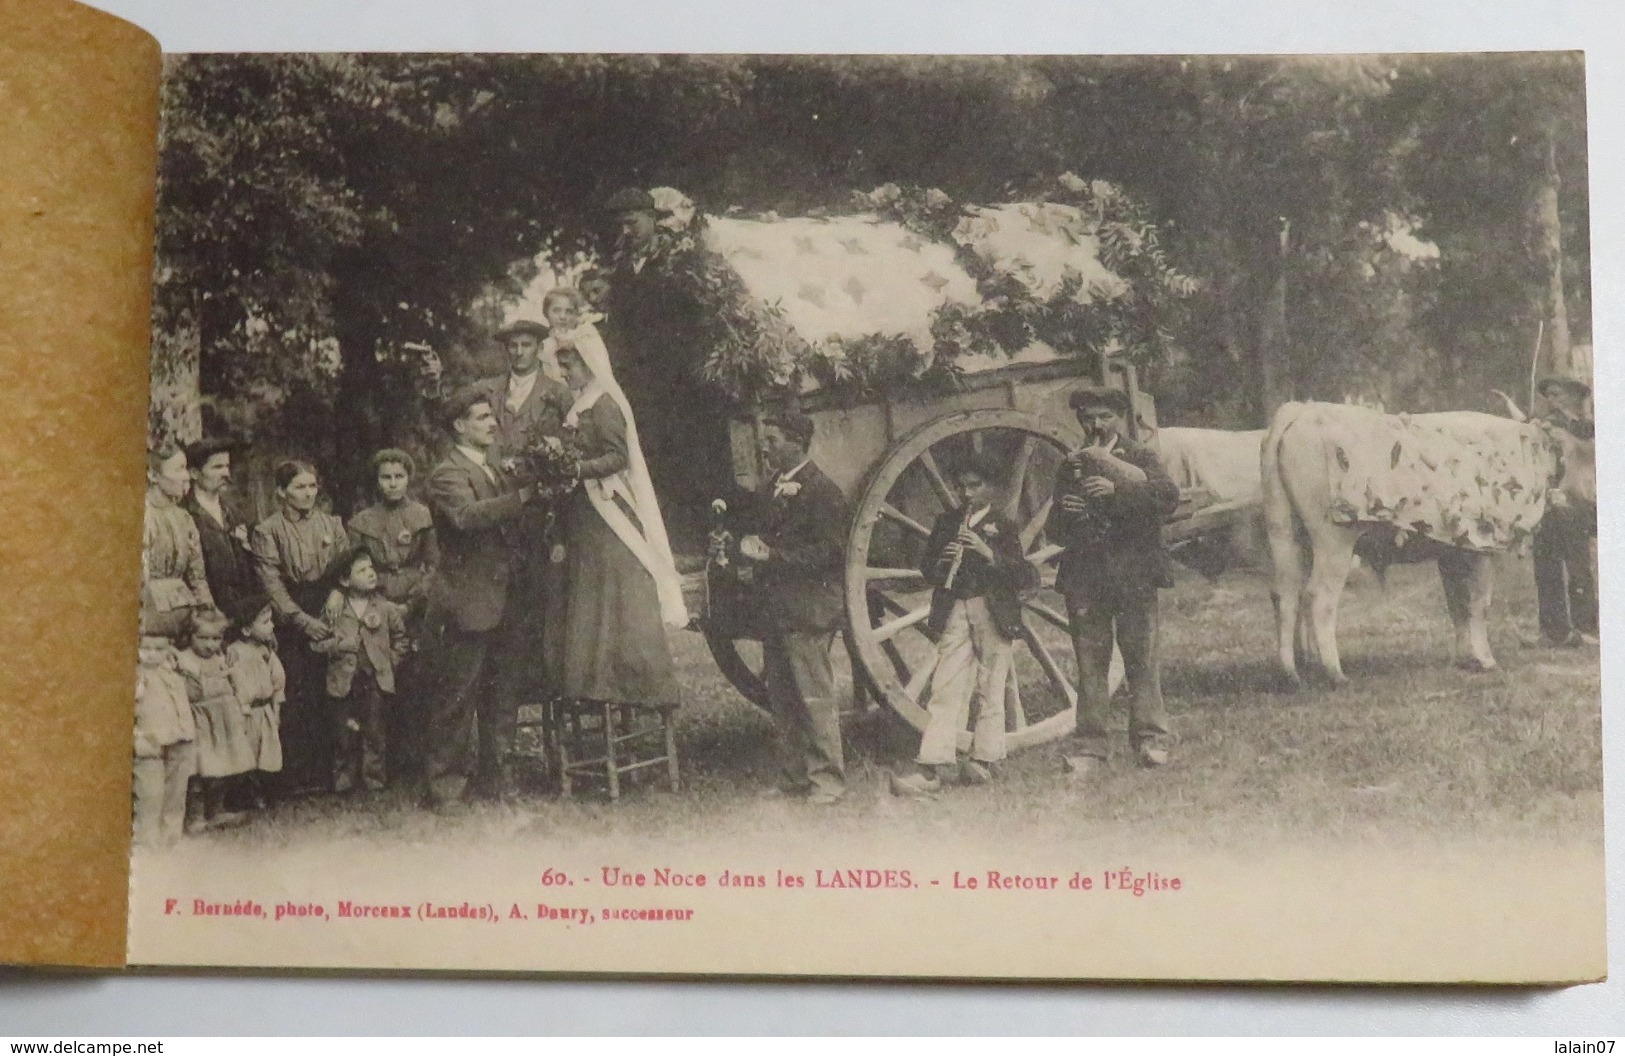 Carnet complet de 20 cartes postales anciennes des LANDES: chasse à la palombe, bergère sur échasses, noce scènes de vie